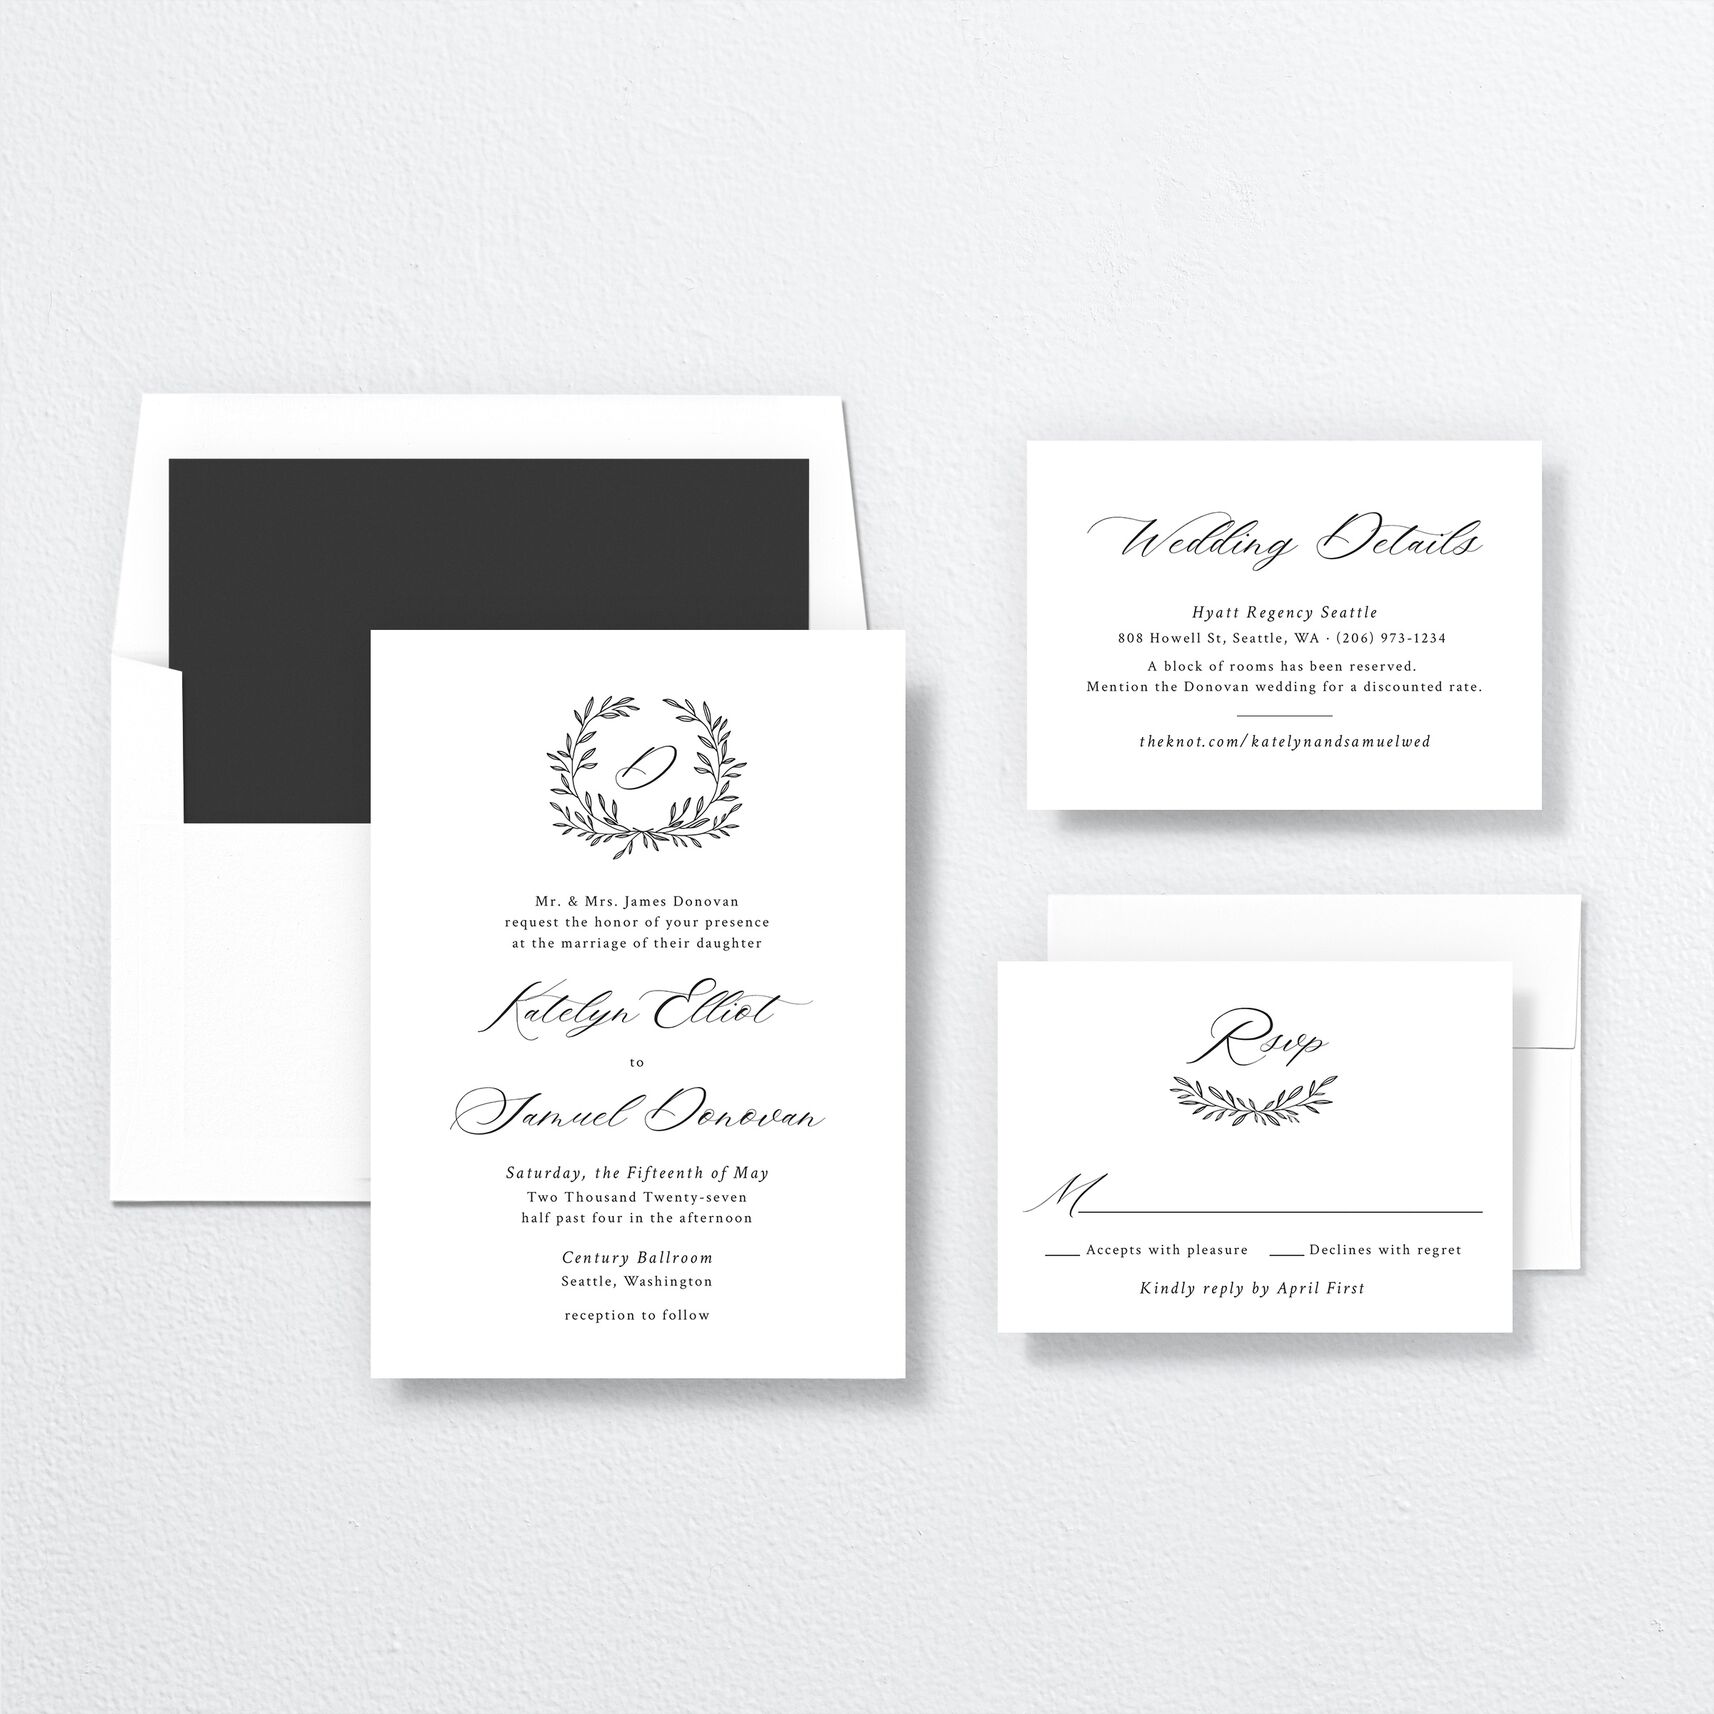 Monogram Wreath Wedding Invitations suite in black